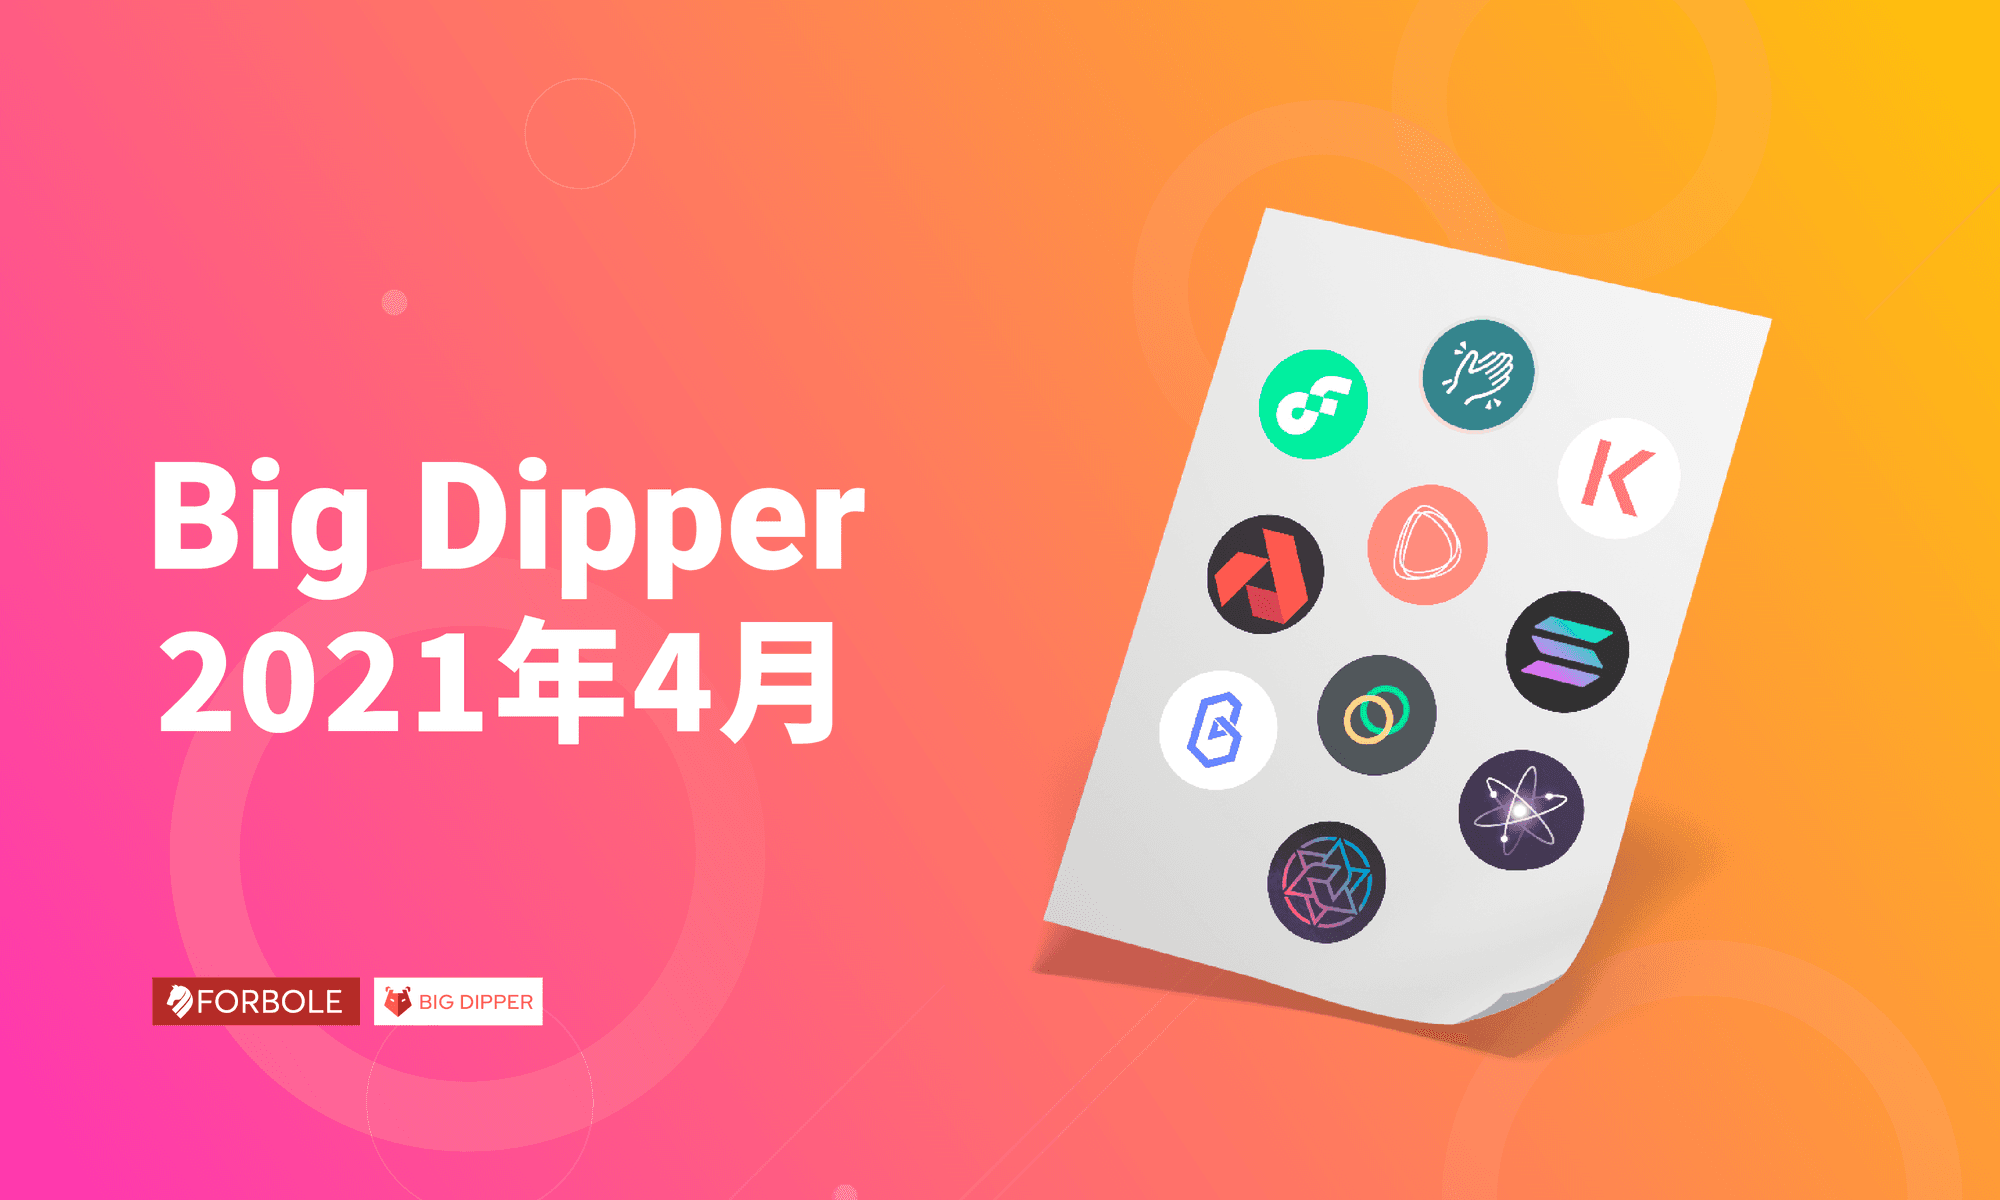 Big Dipper 每月回顧 - 2021 年 4 月